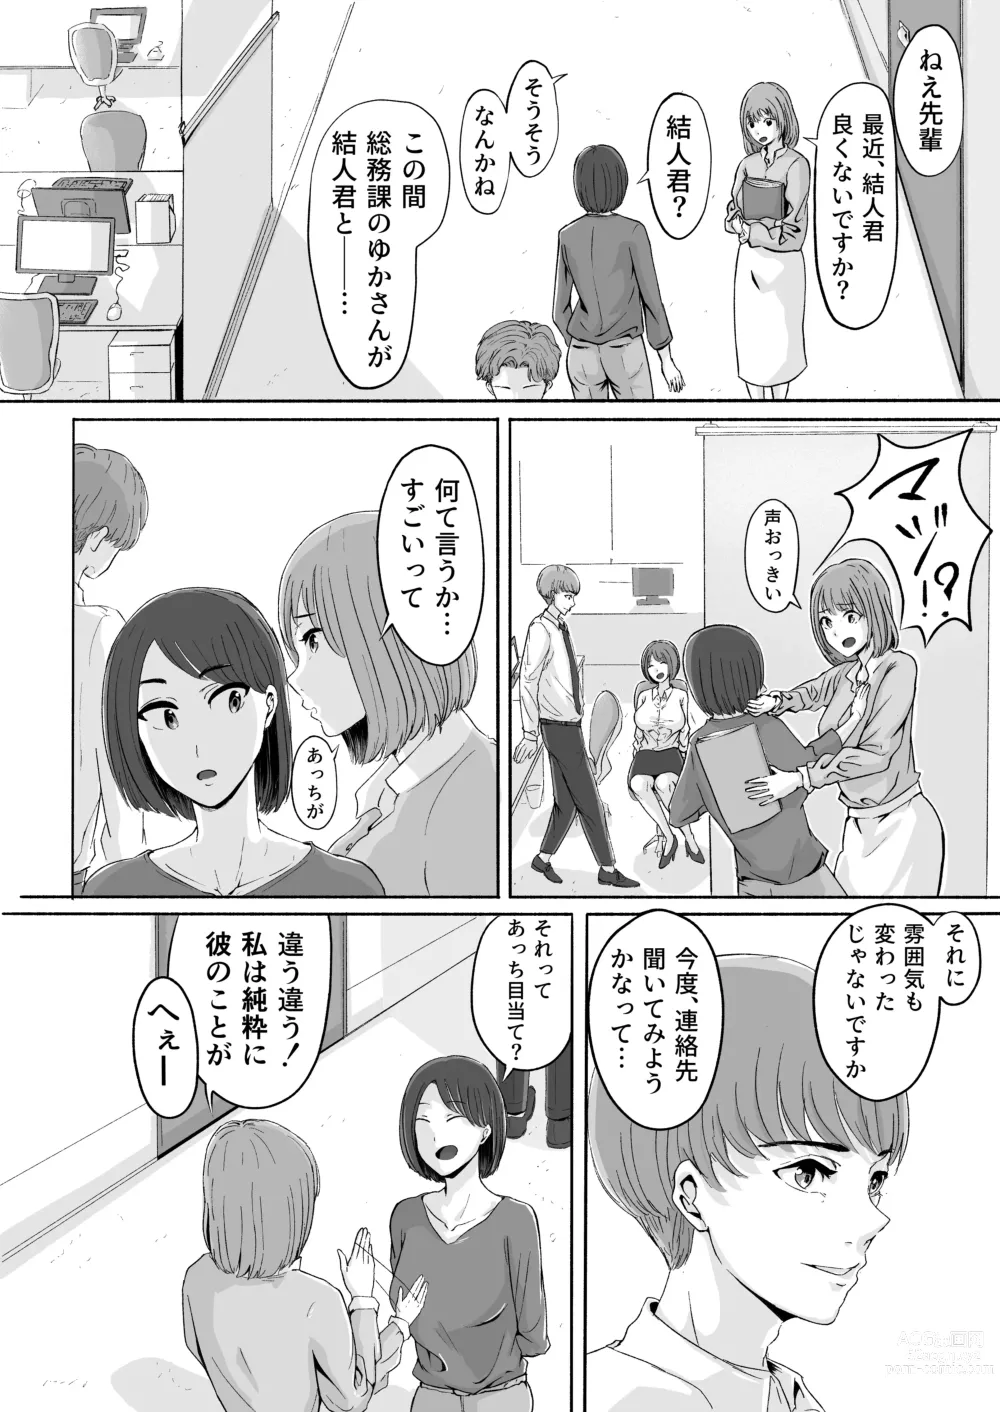 Page 86 of doujinshi Sakura no Hana Chiru Koro